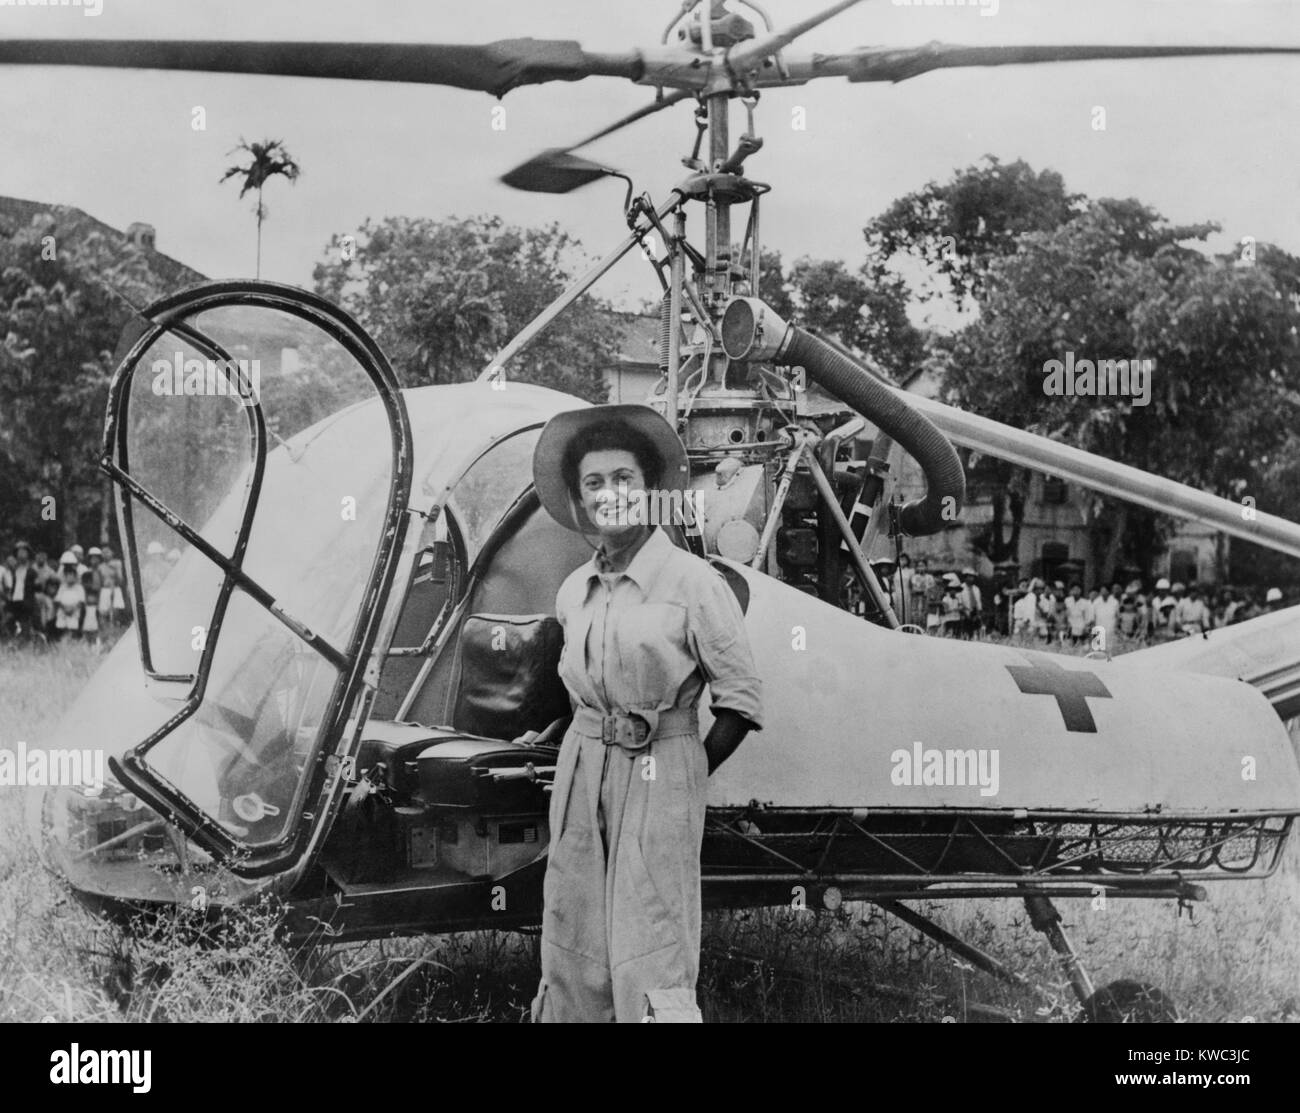 Dr. Valerie Andre, vor Ihr Helikopter in Tonkin, Vietnam, 1952. Sie diente in der französischen Armee als Neurochirurg und lernten, Hubschrauber zu fliegen, verwundete Soldaten zu erreichen. Von 1952-53, sie gerettet 165 Soldaten und Fallschirm zu behandeln Verwundete benötigen eine sofortige Operation. 1976 wurde sie die erste Frauen im Rang eines General der französischen Armee zu erreichen. (BSLOC 2015 14 120) Stockfoto